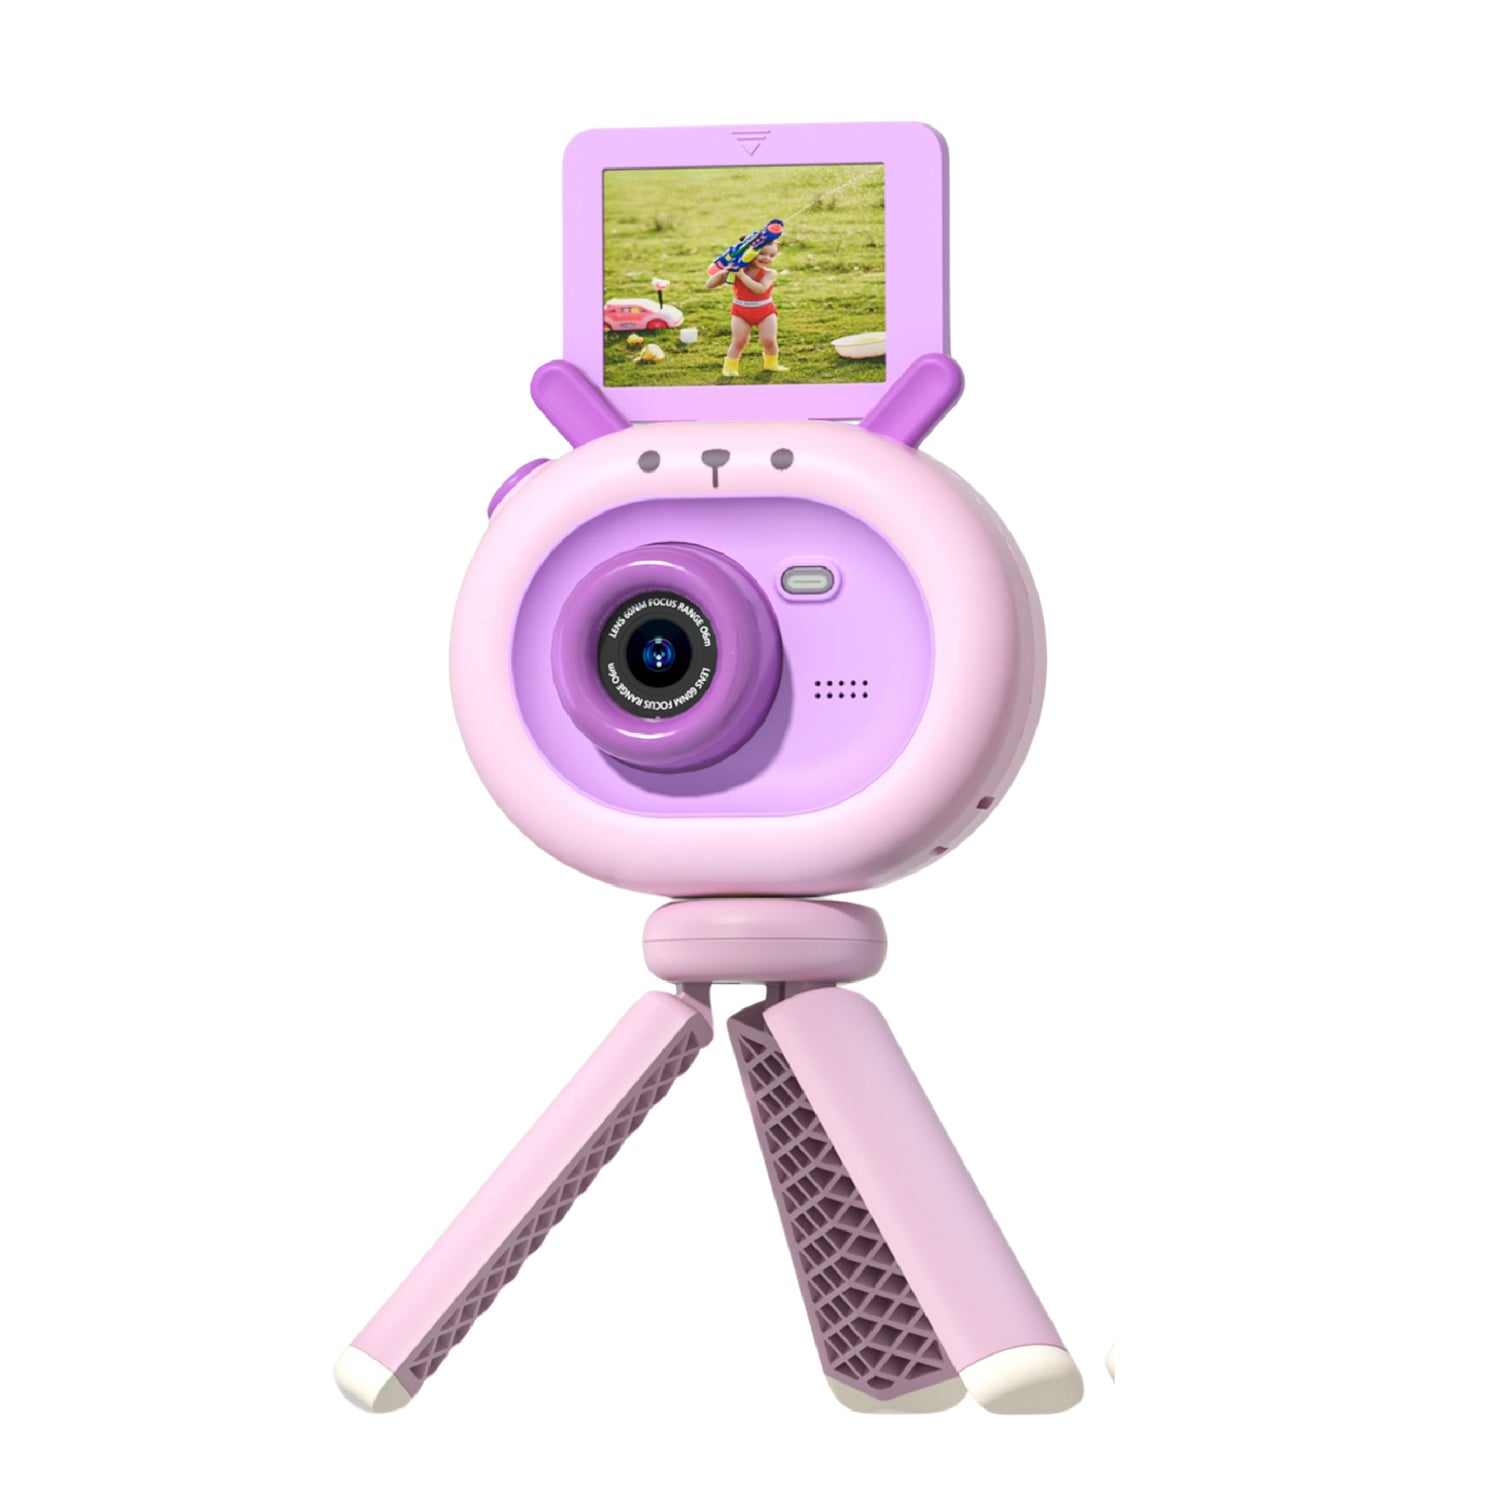 Berpy キッズカメラ 子供用 おもちゃ トイカメラ 動画撮影 カメラ